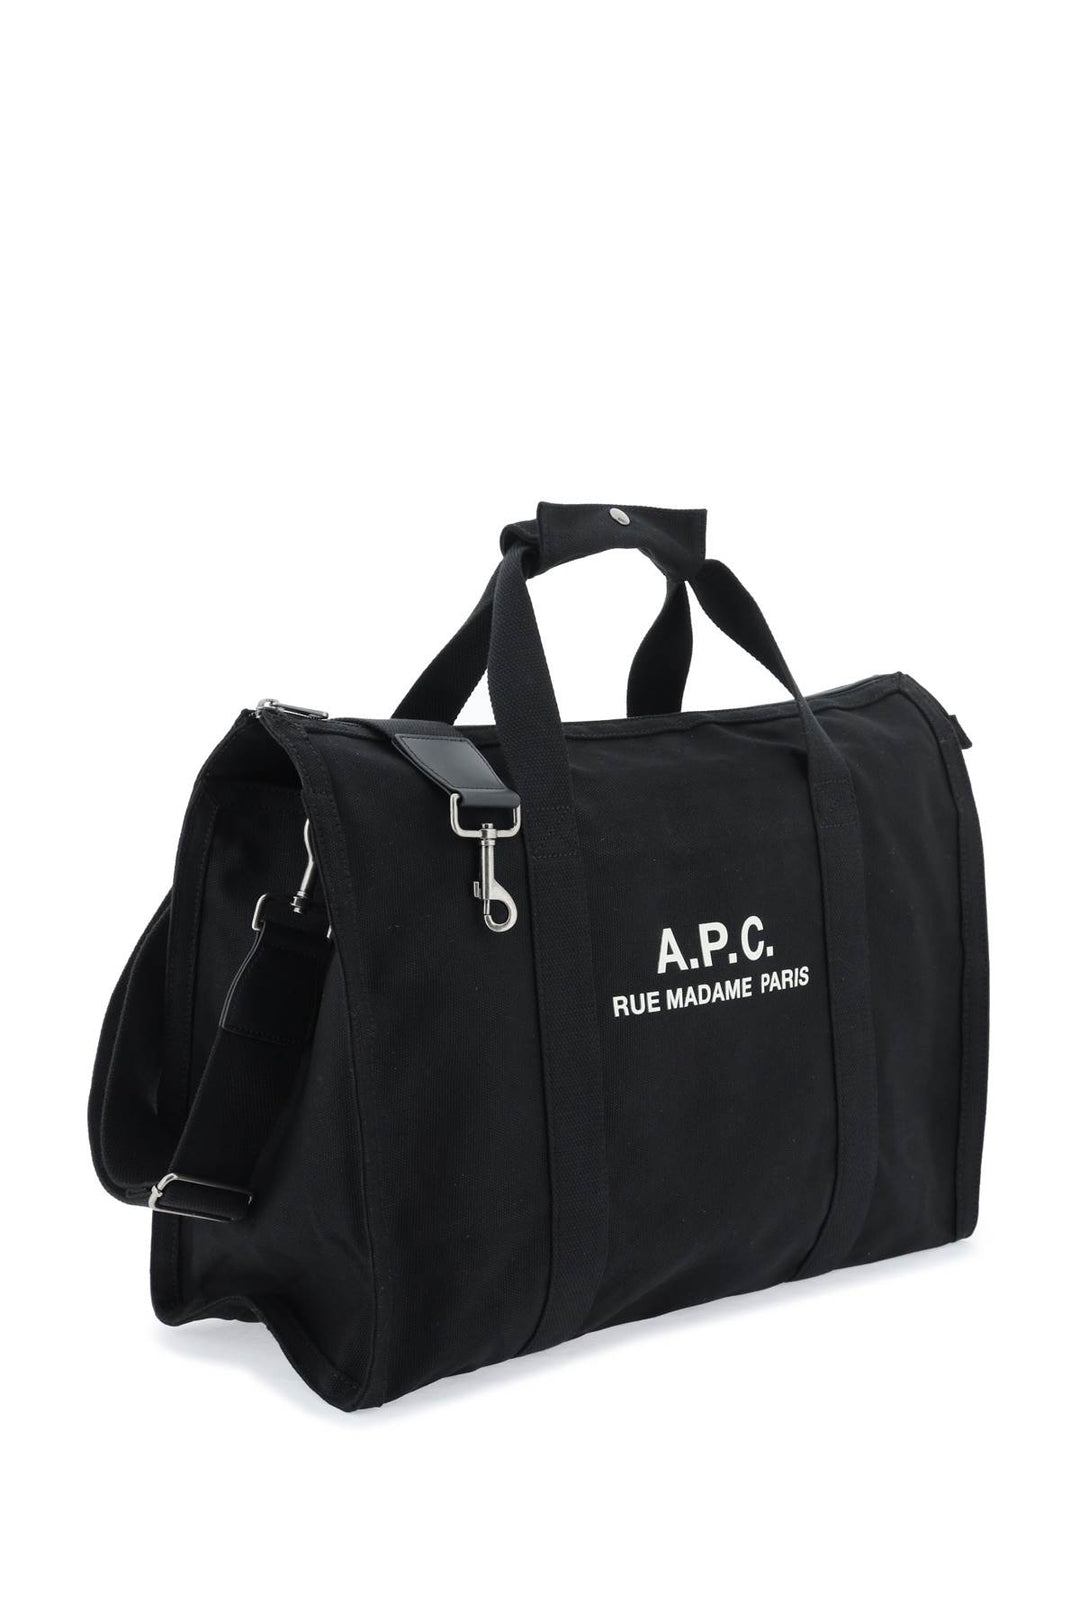 A.P.C. Récupération Tote Bag   Nero